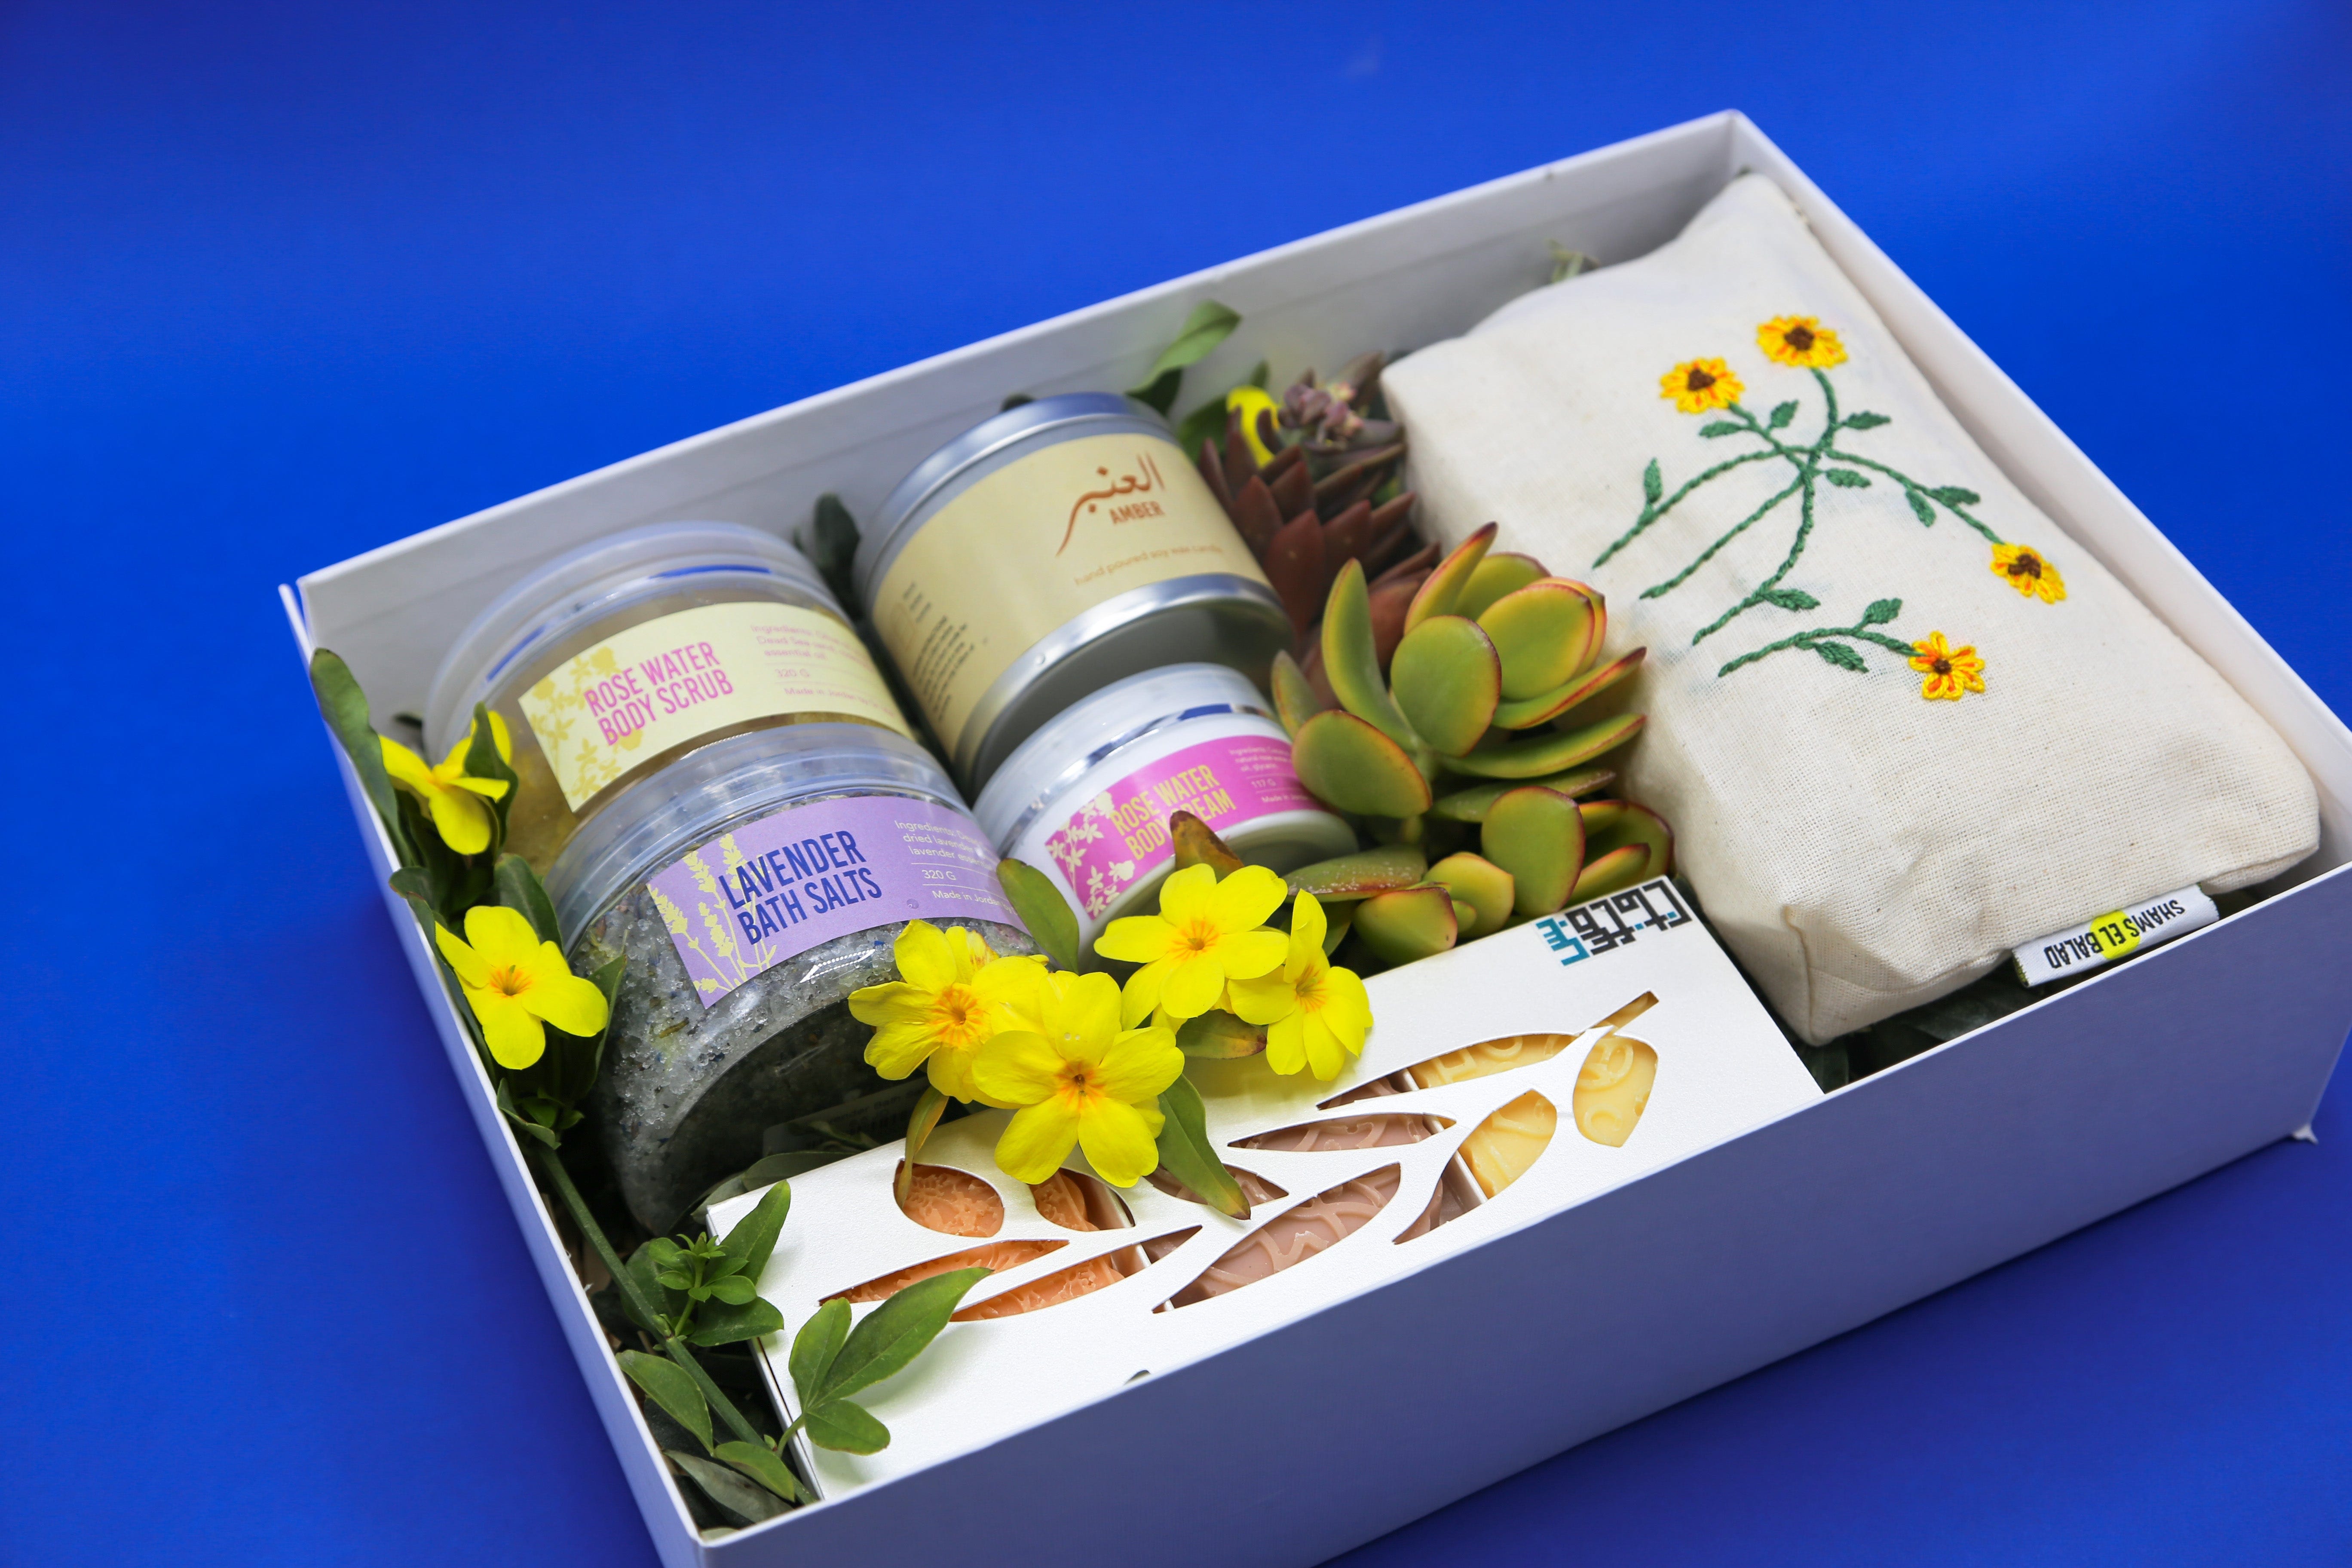 Shams El Balad Mothers Day Gift Box